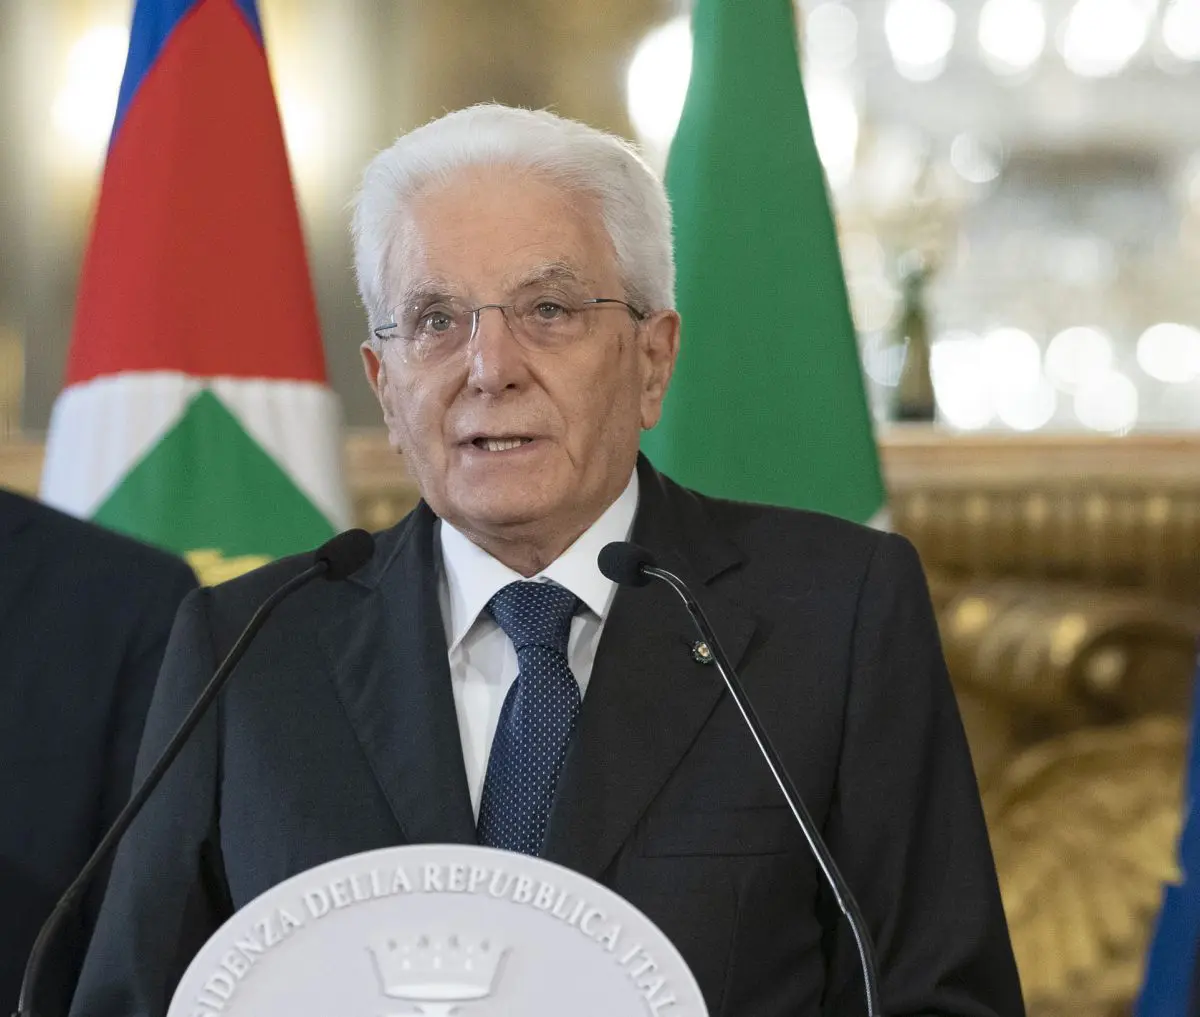 Mattarella “Ripristinare la coesione tra nazioni è vocazione italiana”